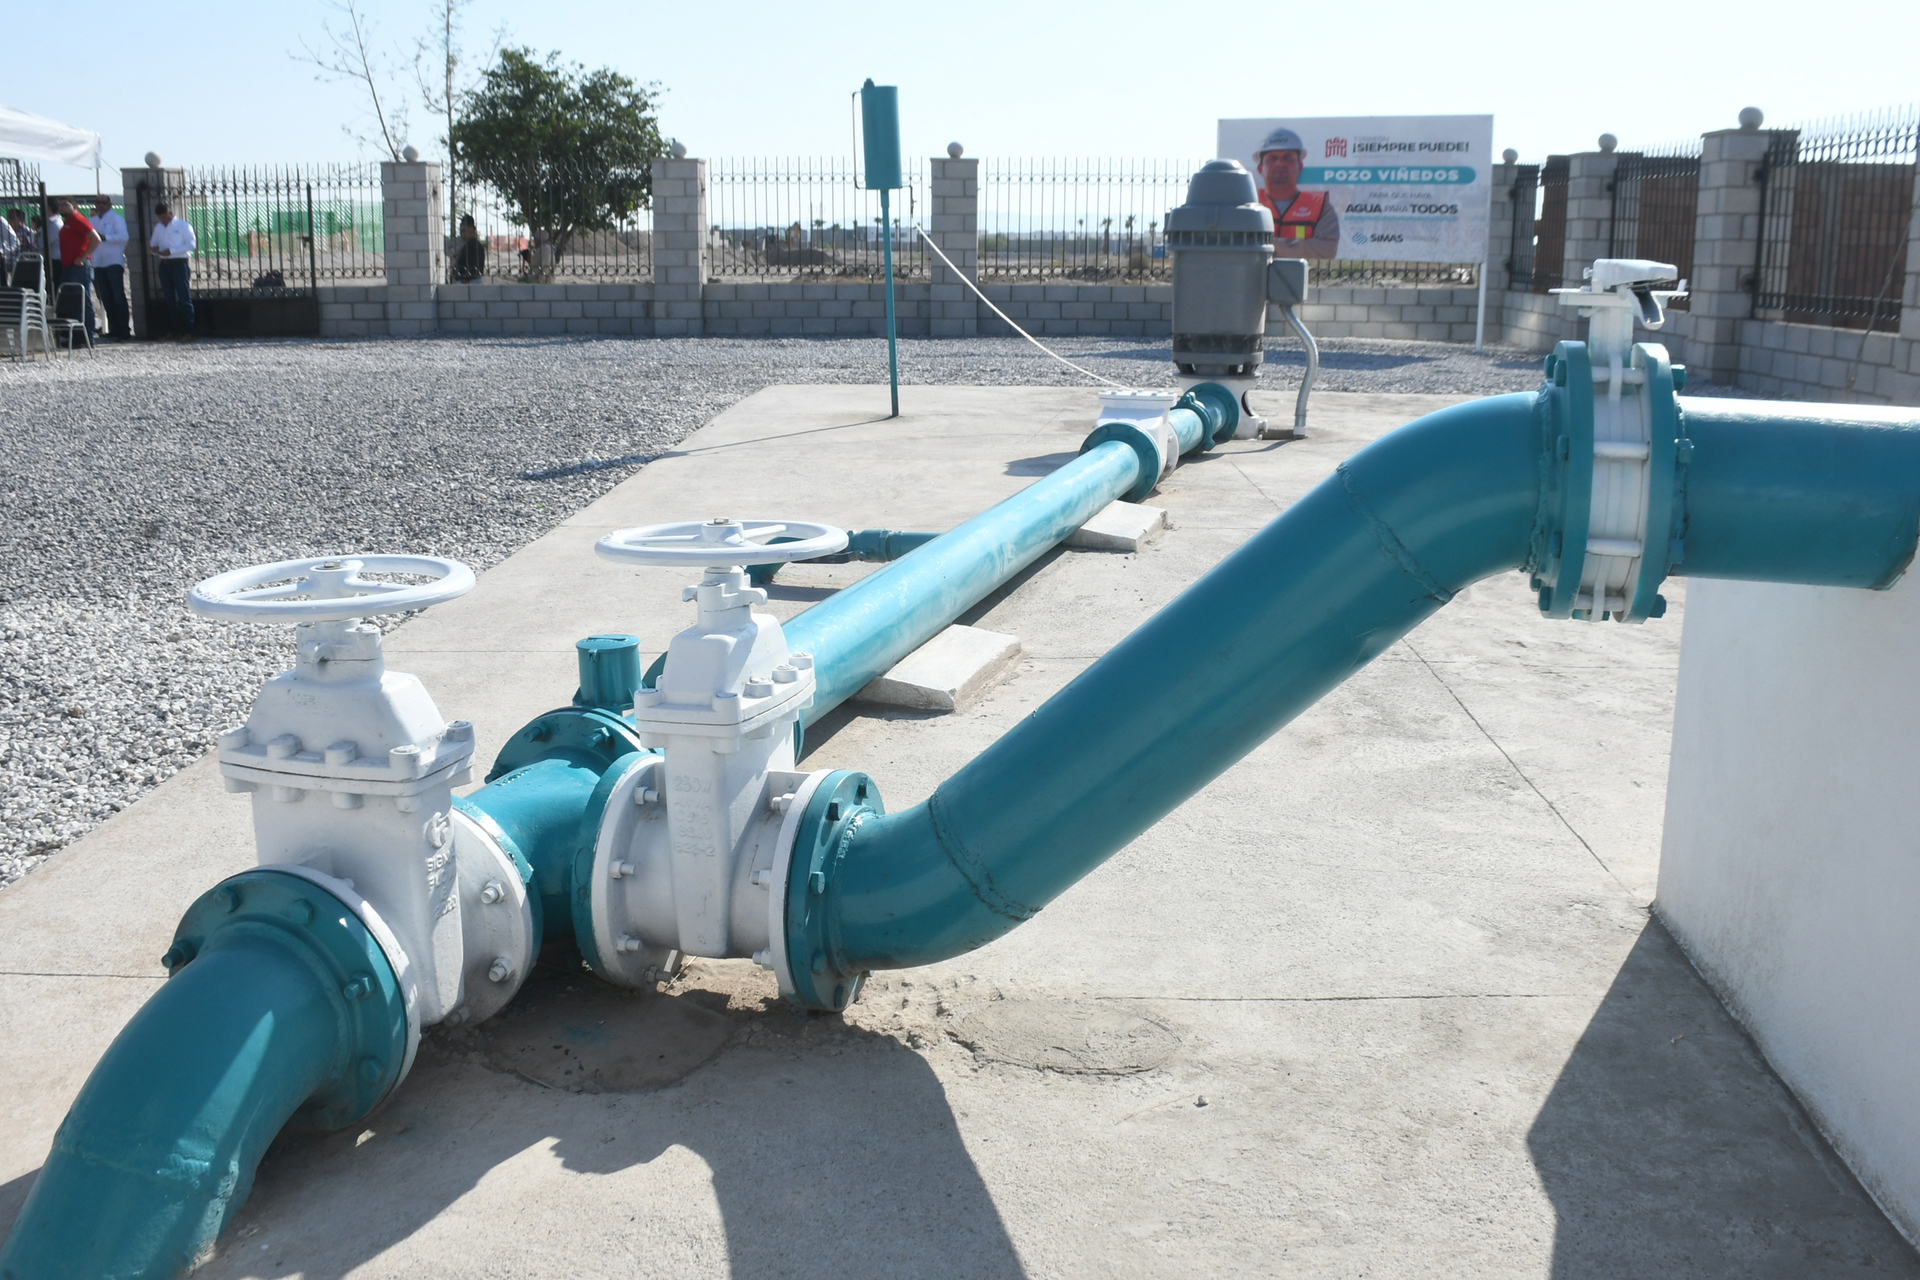 Vuelven a registrarse apagones en pozos de Simas y afecta a suministro de agua en Torreón